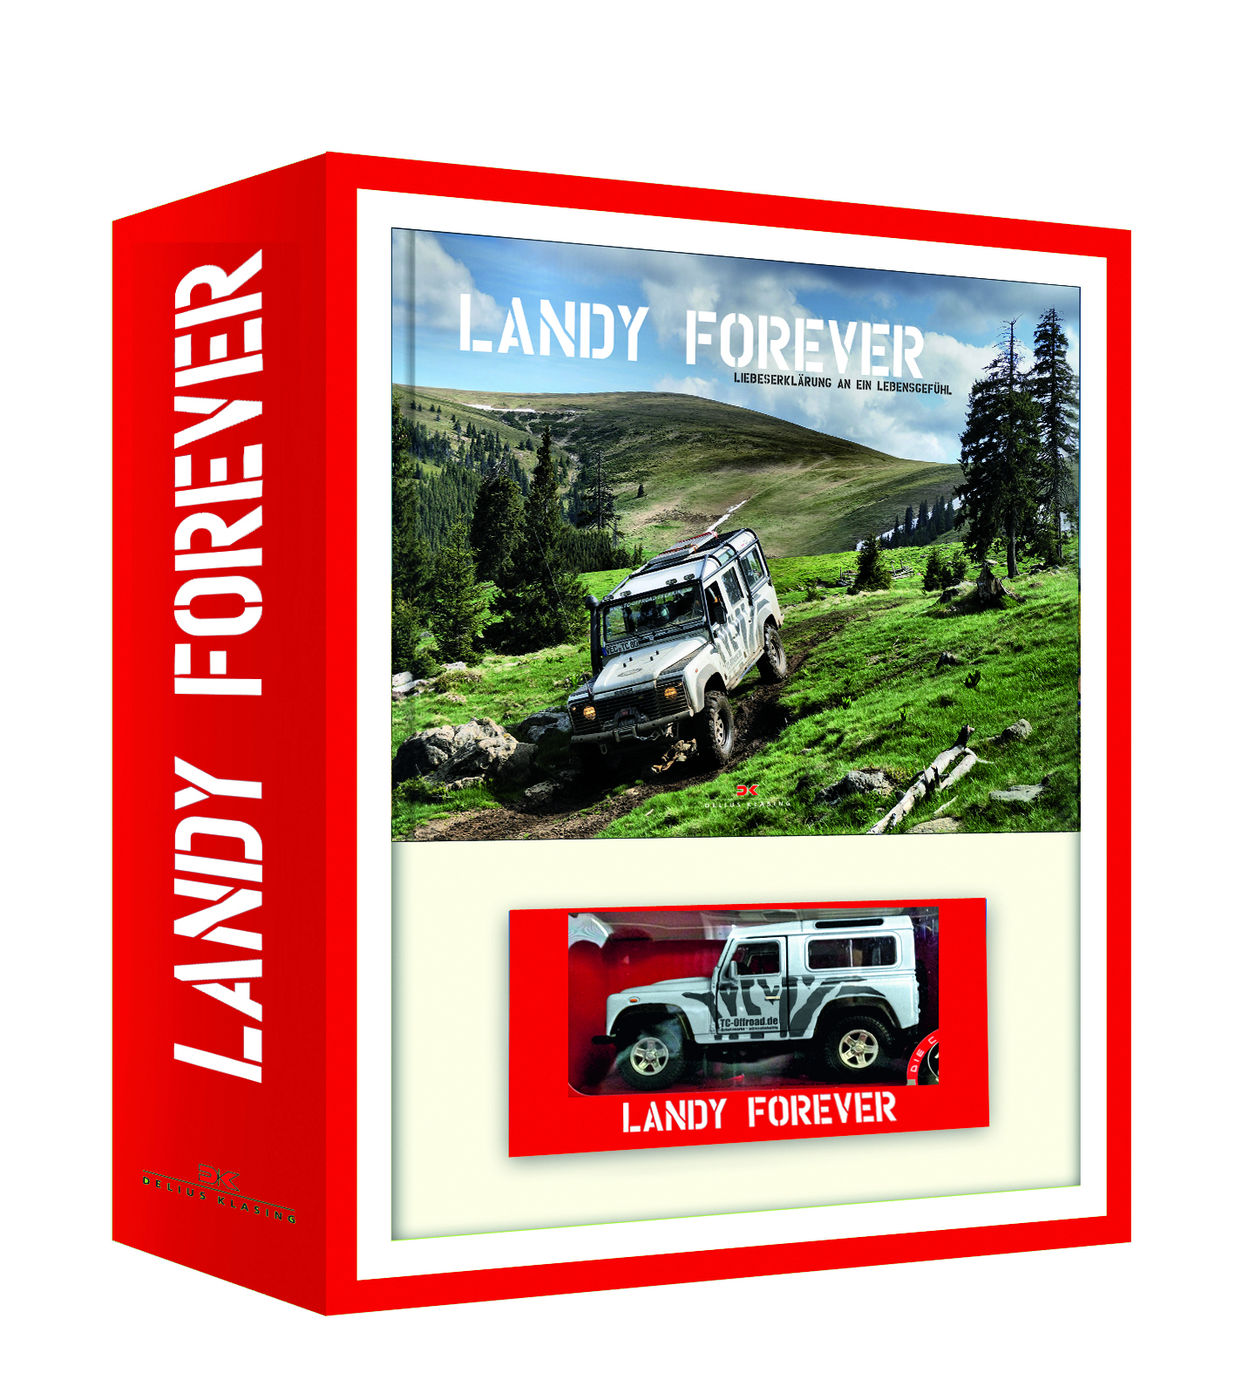 Landy forever